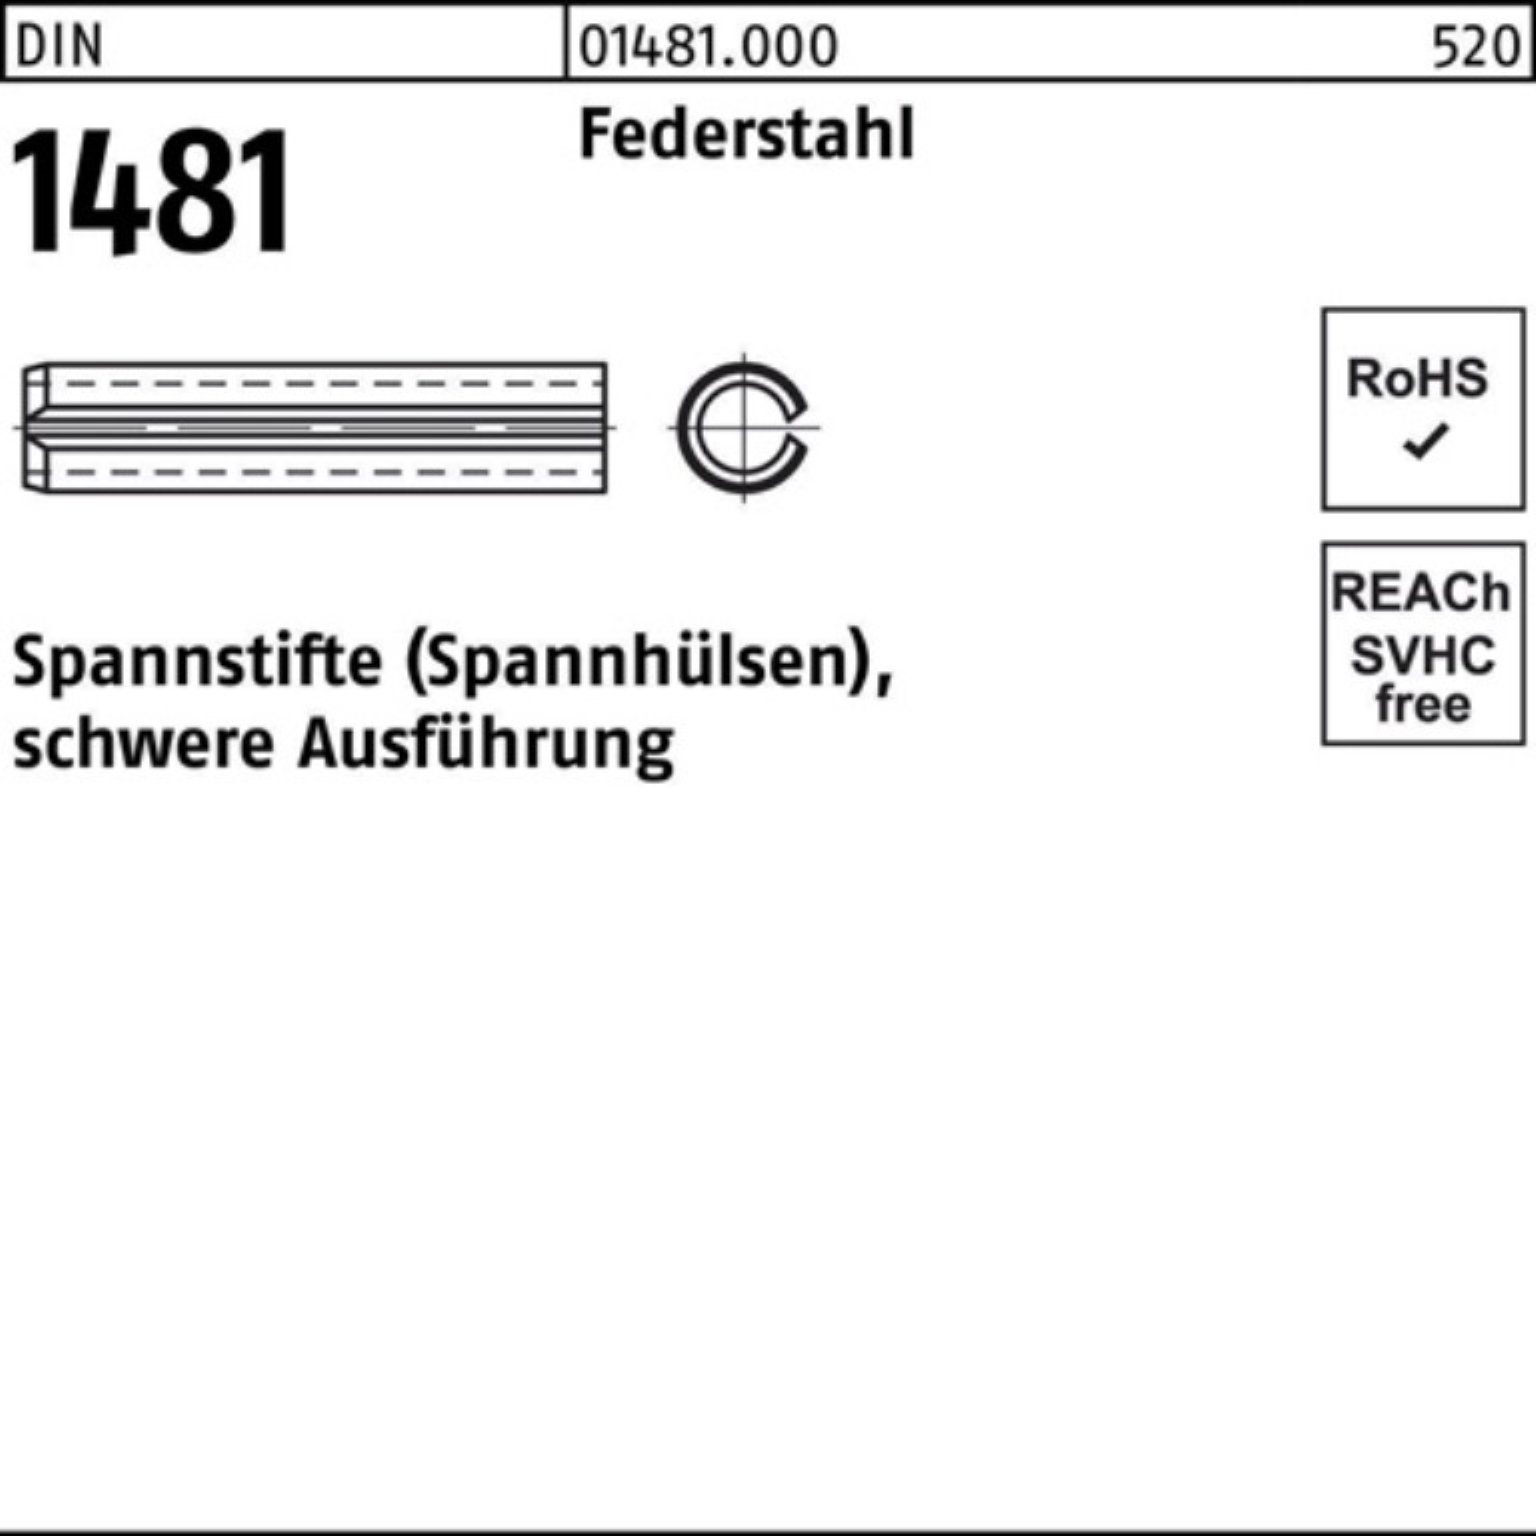 Reyher 1 DIN Spannstift Spannstift Federstahl Pack schwere 1481 30 Ausführung 30x 100er